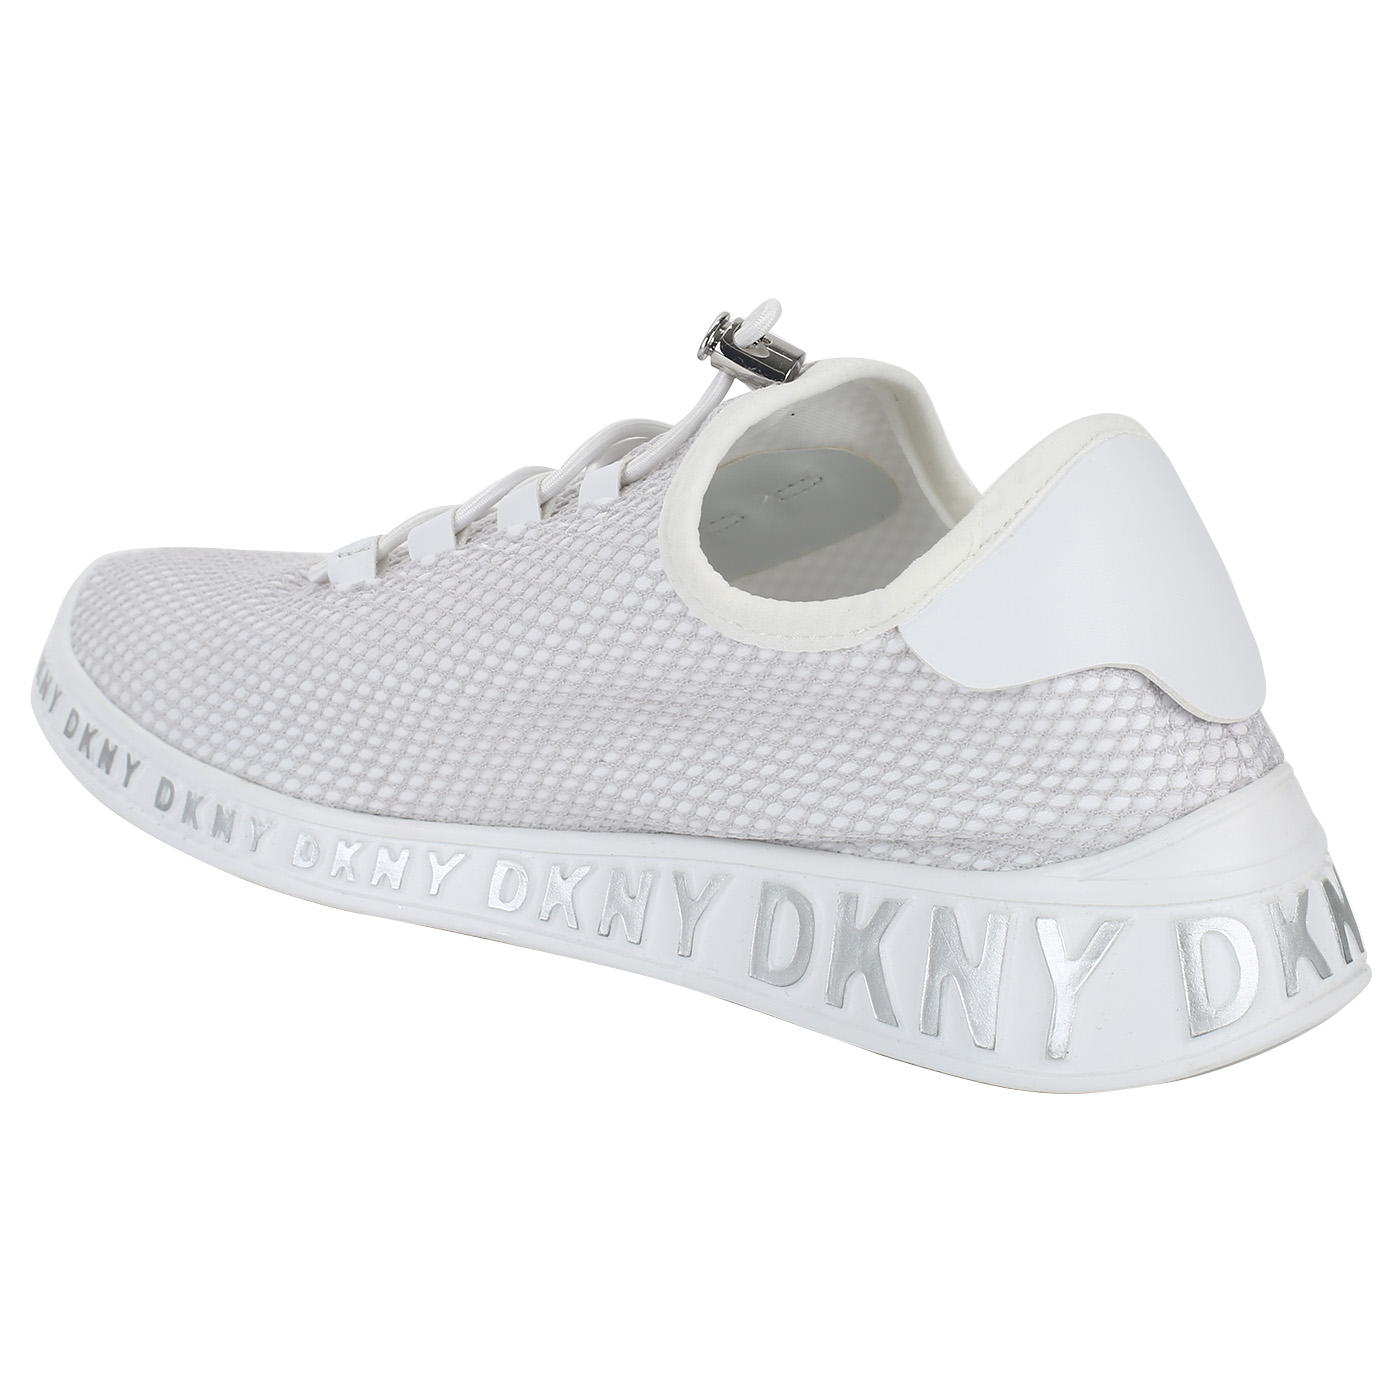 Легкие кроссовки на резинке DKNY Mel